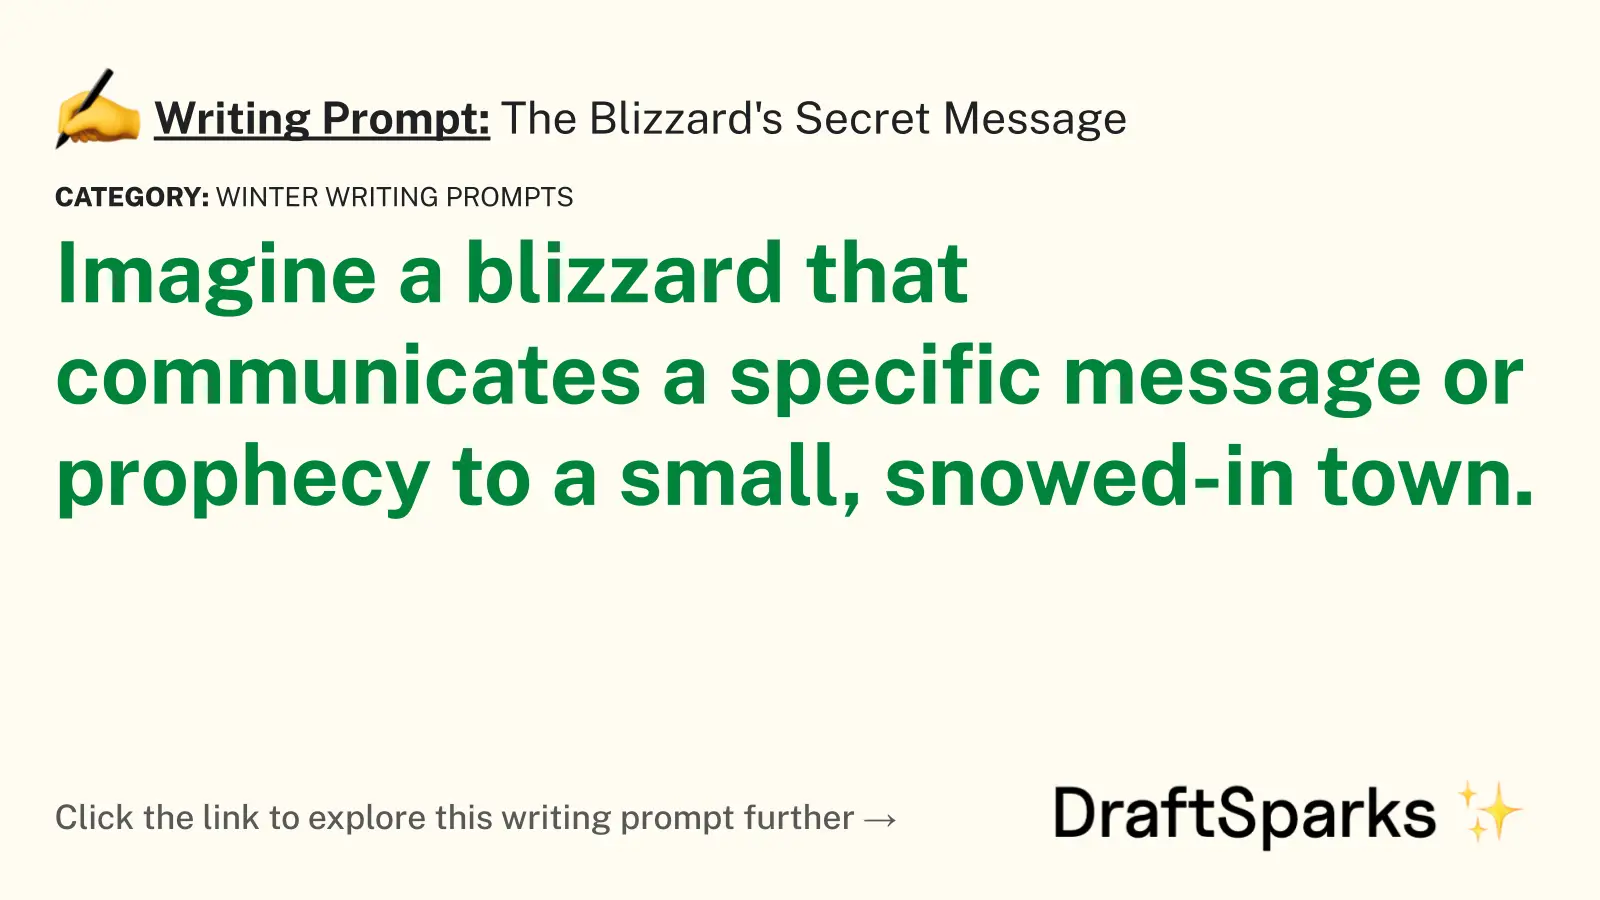 The Blizzard’s Secret Message